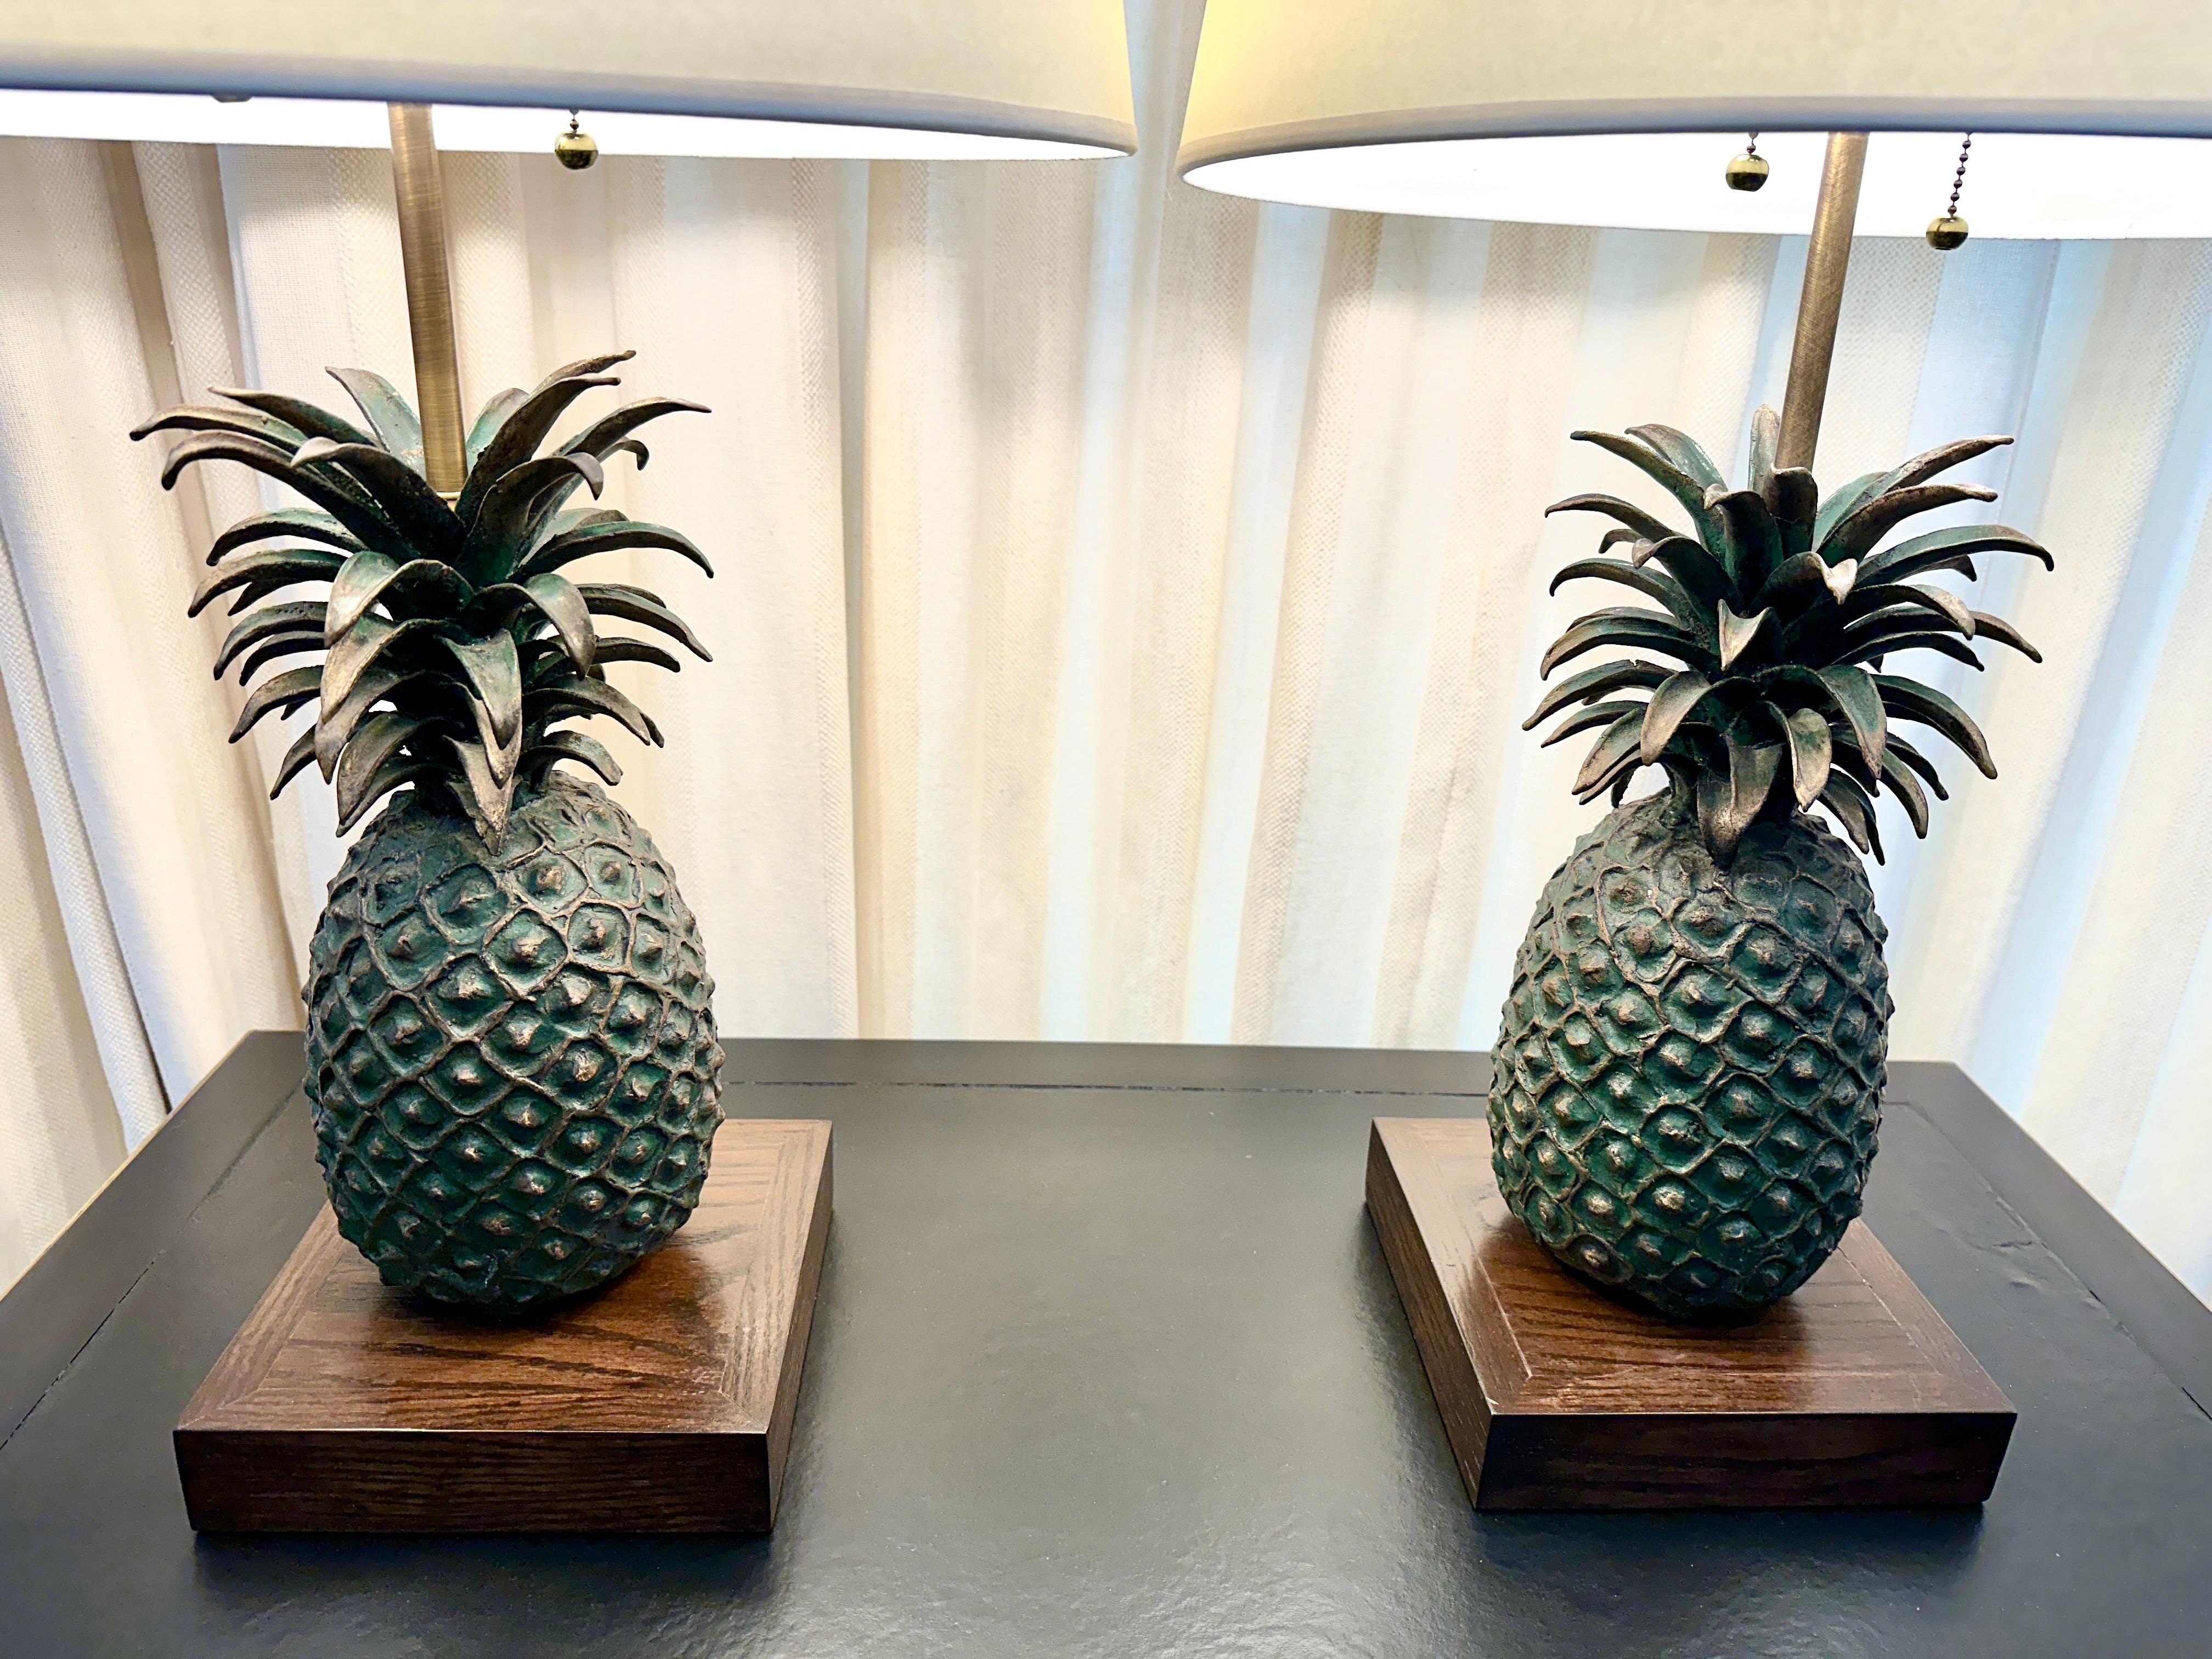 Diese Ananas wurde Anfang des 20. Jahrhunderts im Wachsausschmelzverfahren hergestellt. Die Ananas ist ein traditionelles westliches Symbol der Begrüßung.  Sie sind schwere massive Bronze Ananas auf einem Sockel aus gebeiztem Eichenholz montiert,